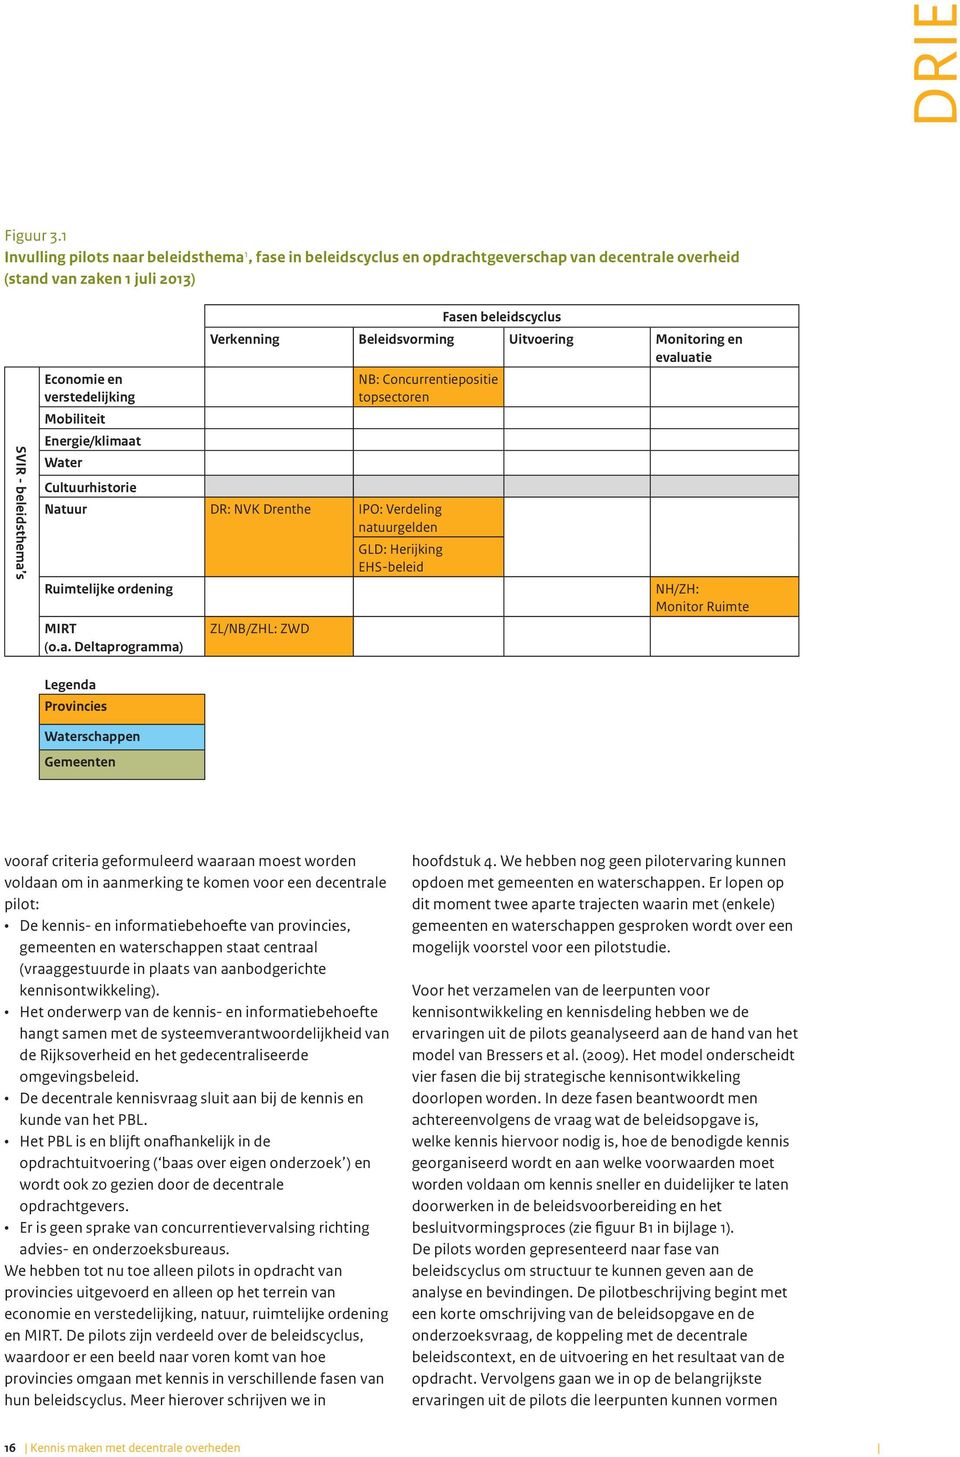 Energie/klimaat Water Cultuurhistorie Fasen beleidscyclus Verkenning Beleidsvorming Uitvoering Monitoring en evaluatie NB: Concurrentiepositie topsectoren Natuur DR: NVK Drenthe IPO: Verdeling